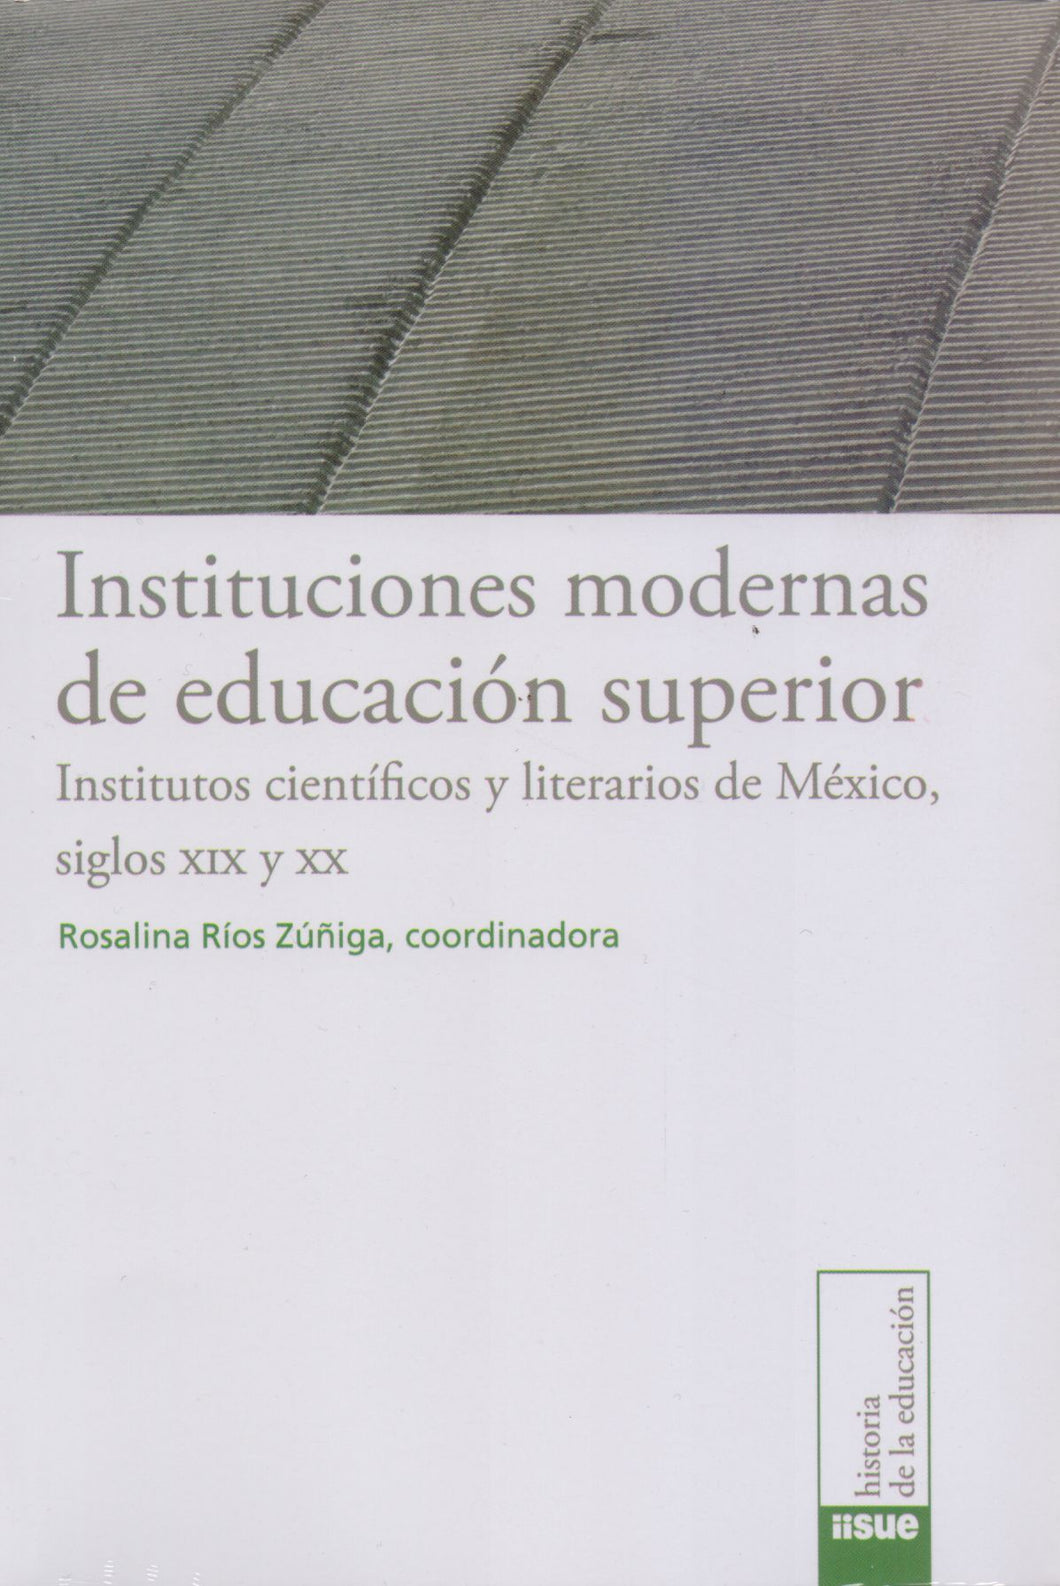 Instituciones modernas de educación superior. Institutos científicos y literarios de México siglos XIX y XX - Rosalina Ríos Zúñiga